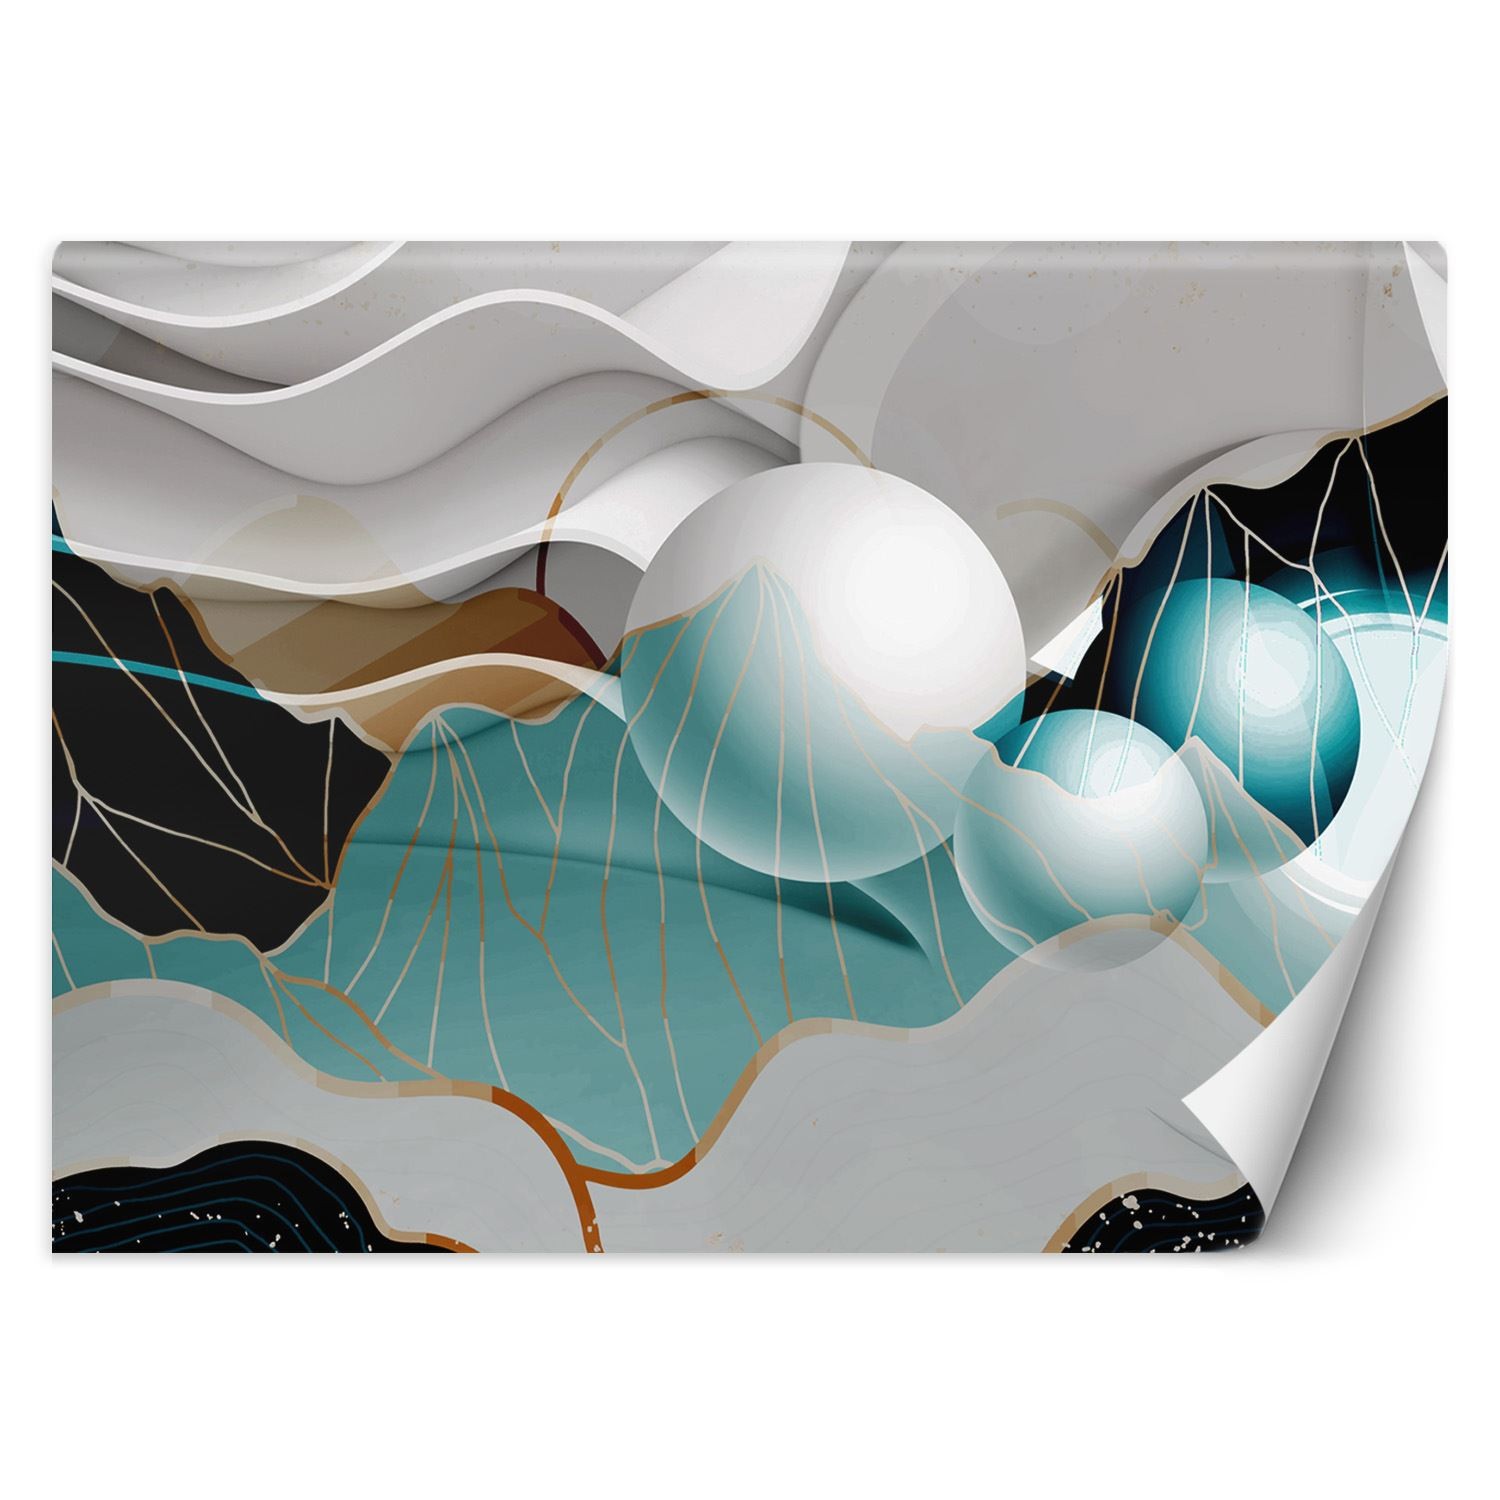 Trend24 – Behang – Abstract Met Ballen 3D – Vliesbehang – Behang Woonkamer – Fotobehang – 350x245x2 cm – Incl. behanglijm